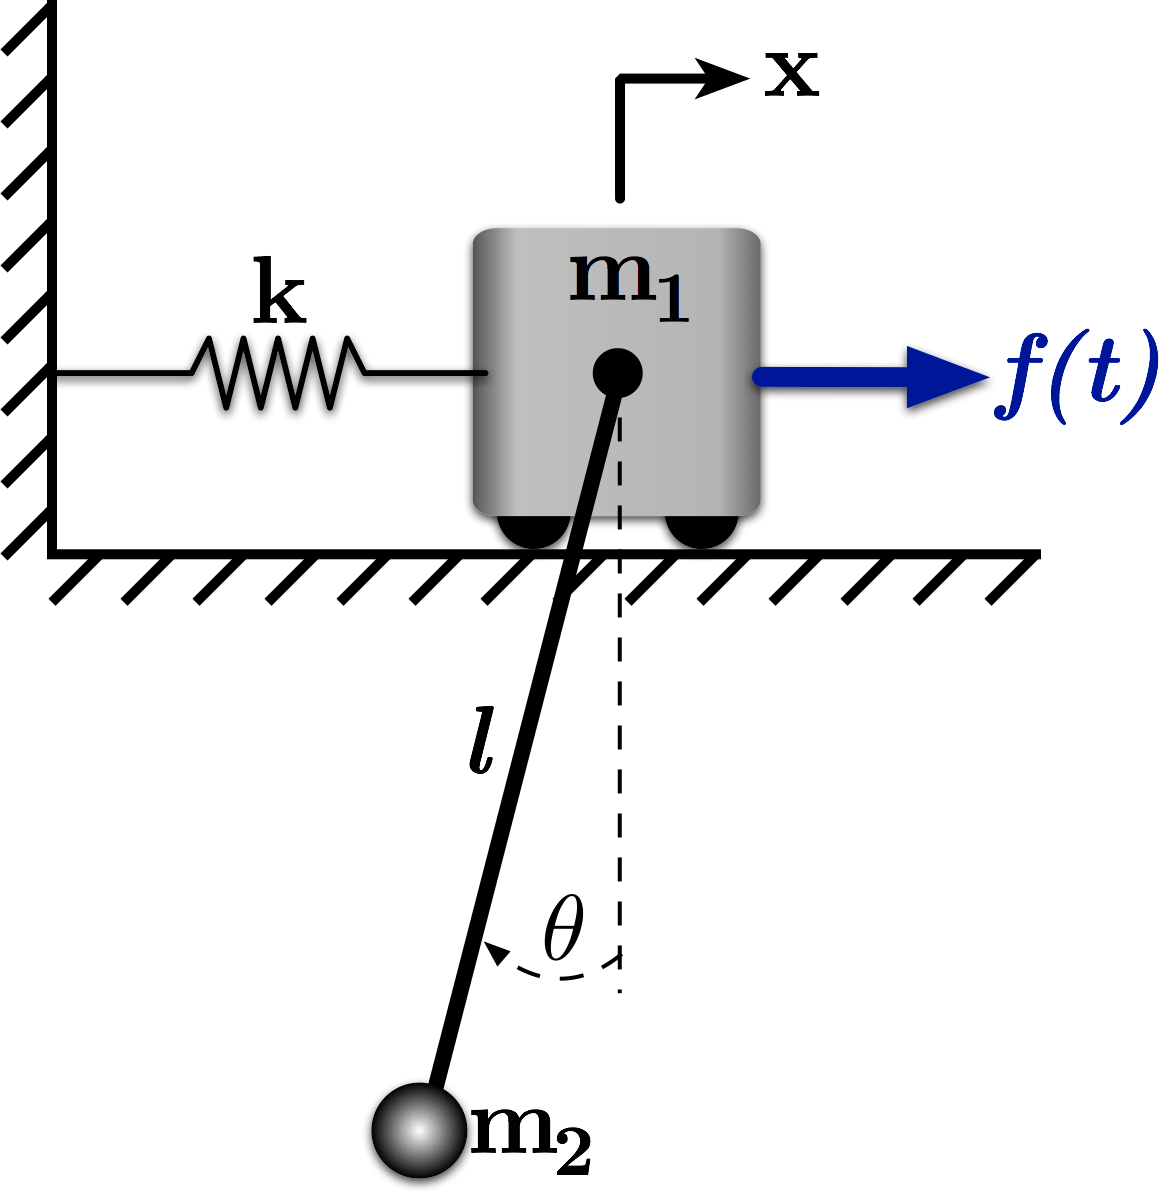 An Mass-Spring-Pendulum System